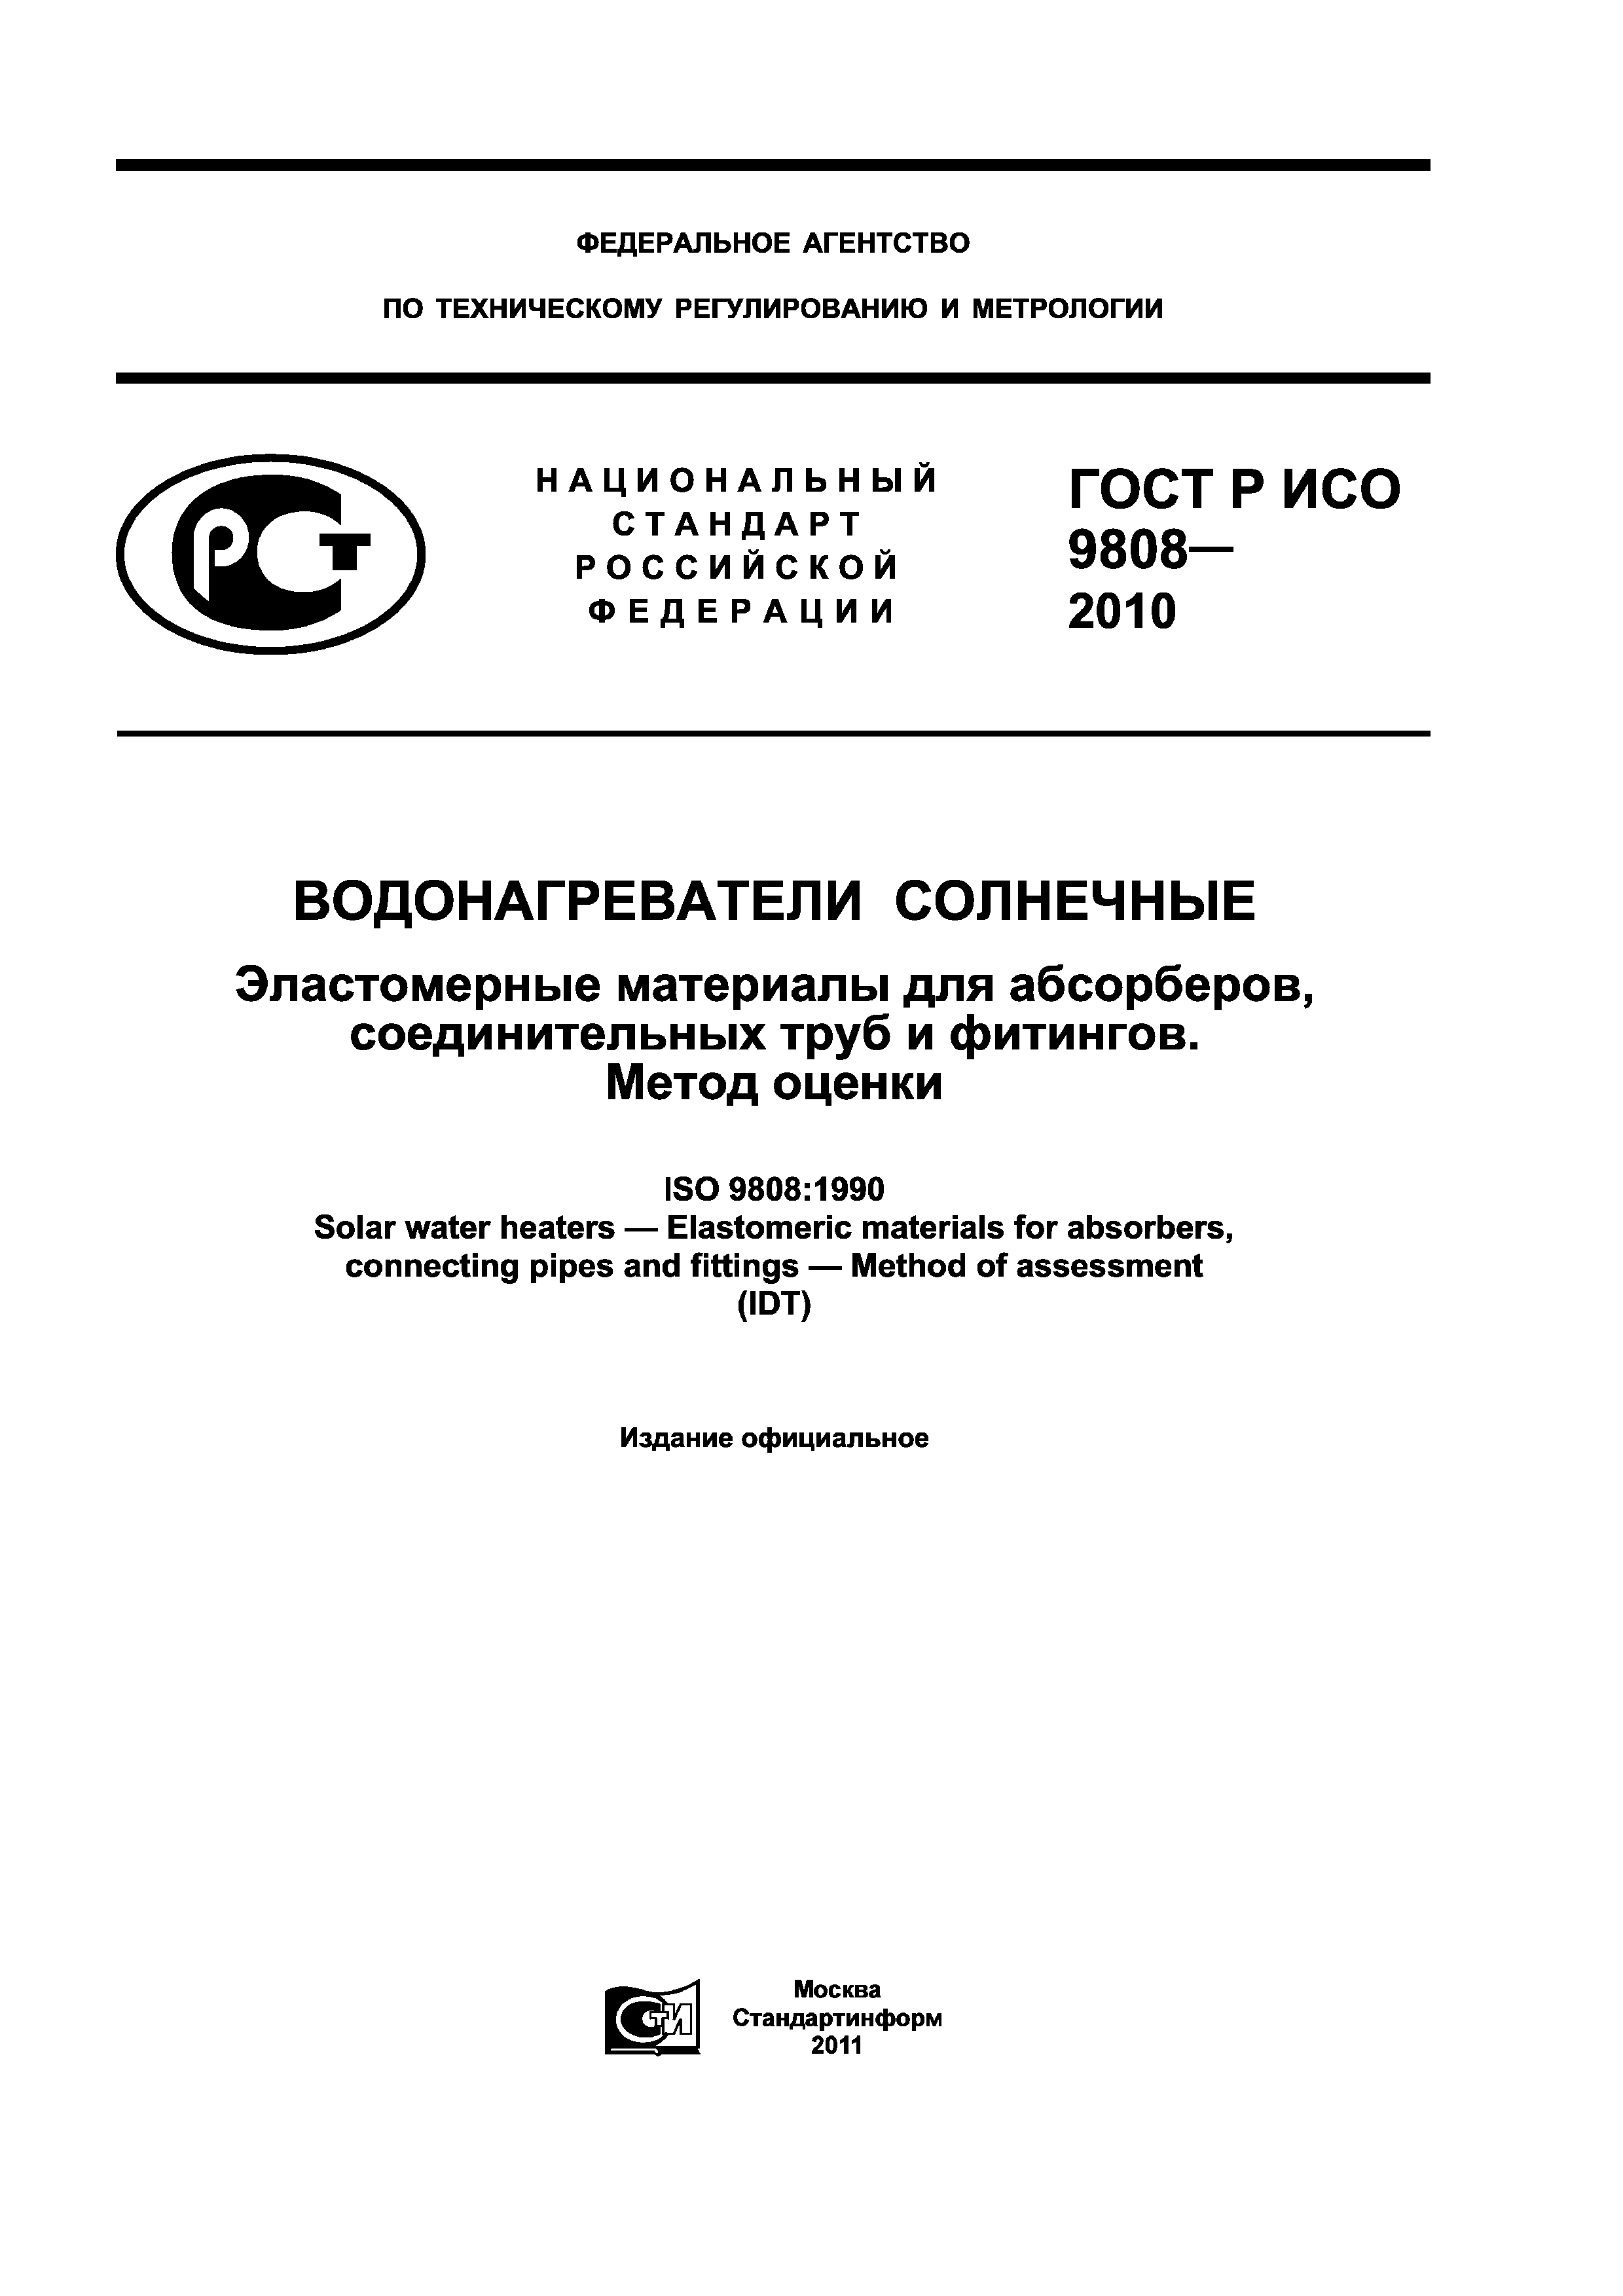 ГОСТ Р ИСО 9808-2010